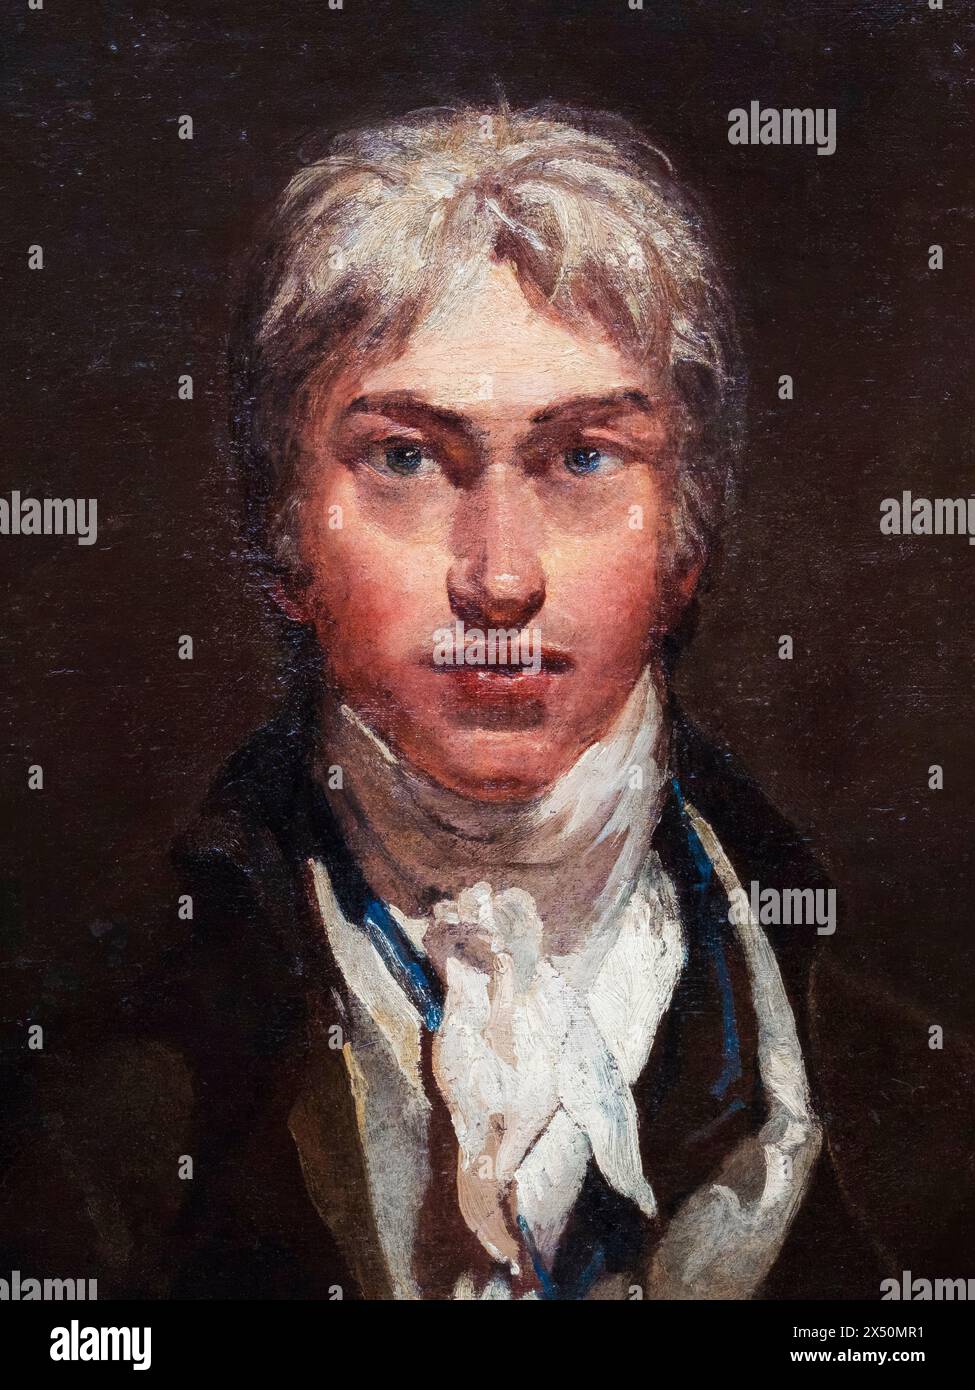 JMW Turner (1775-1851), Autoportrait du peintre romantique anglais Joseph Mallord William Turner, huile sur toile vers 1799 Banque D'Images